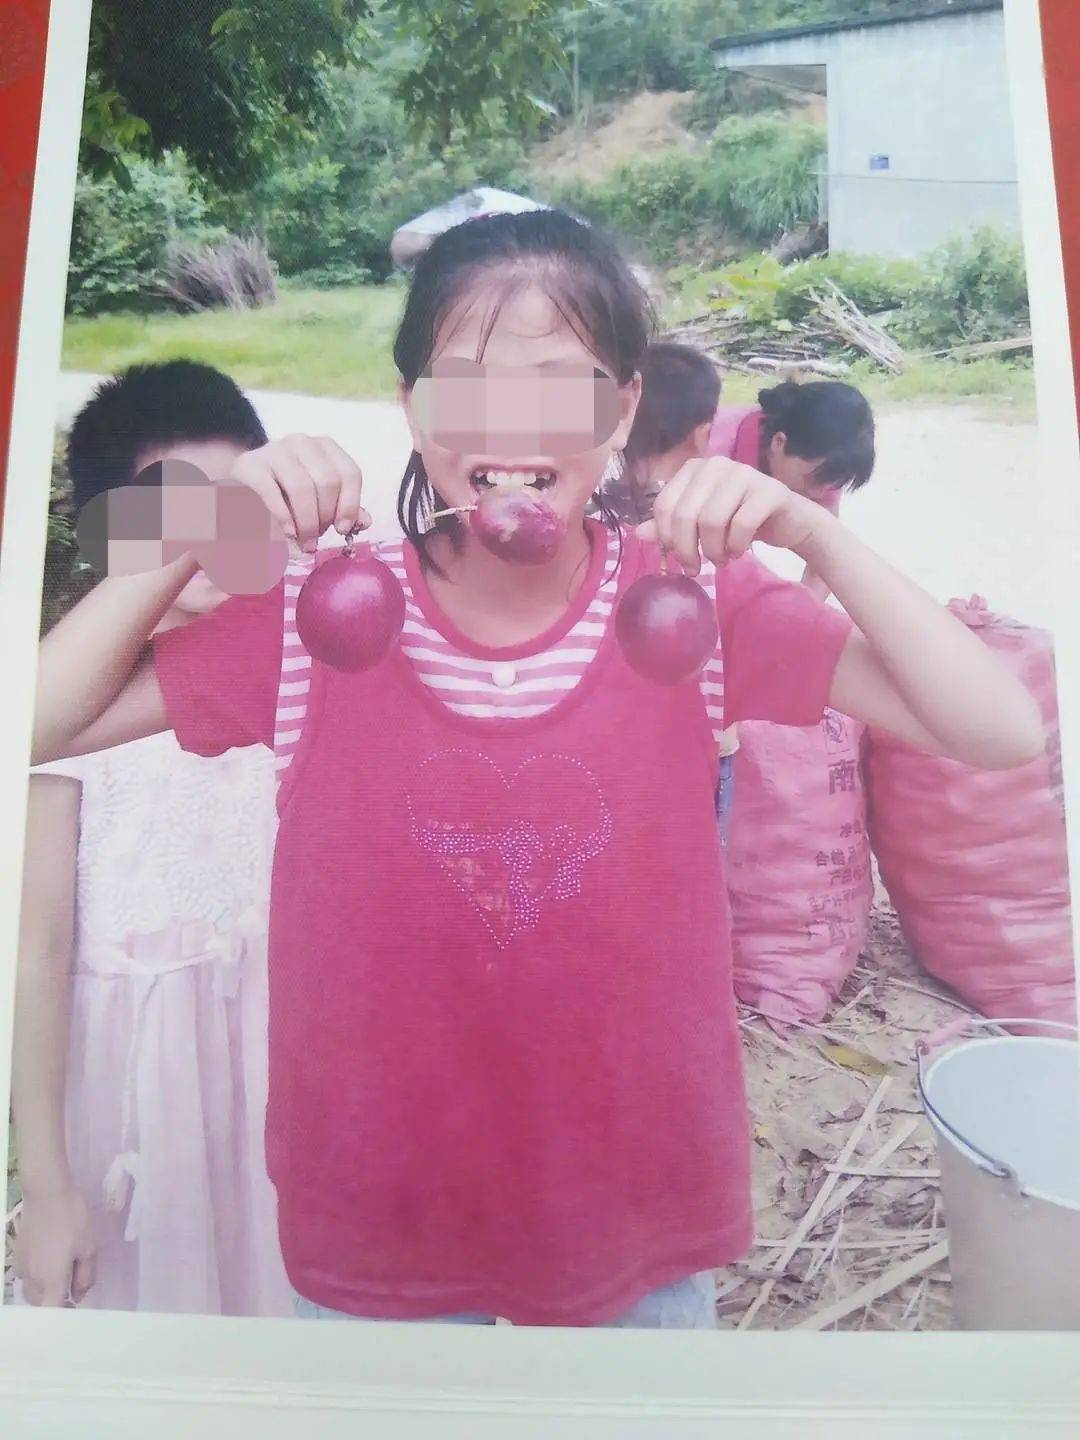 卖百香果的10岁女孩被强奸杀害,嫌疑人"希望枪毙自己"